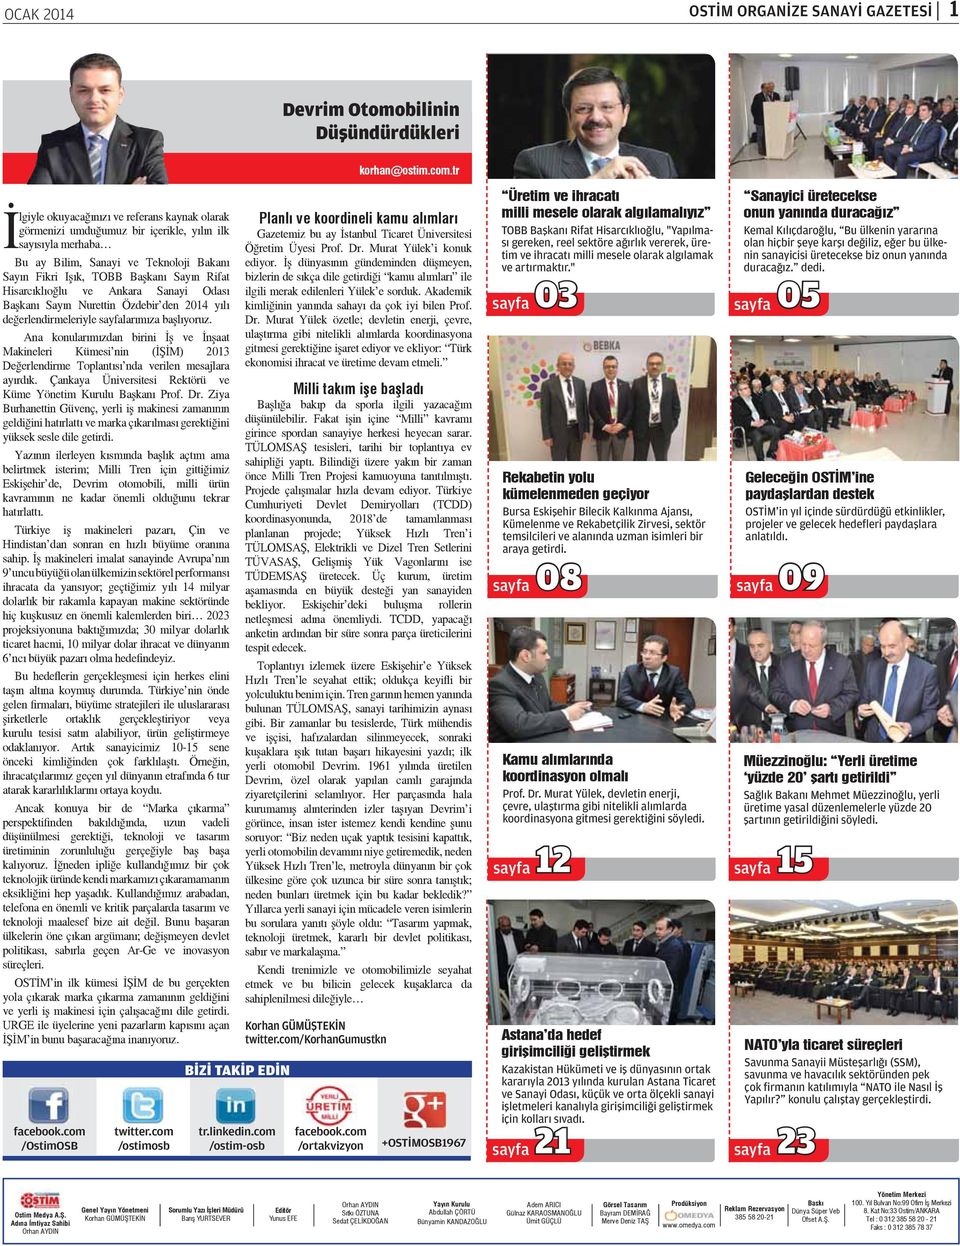 Hisarcıklıoğlu ve Ankara Sanayi Odası Başkanı Sayın Nurettin Özdebir den 2014 yılı değerlendirmeleriyle sayfalarımıza başlıyoruz.